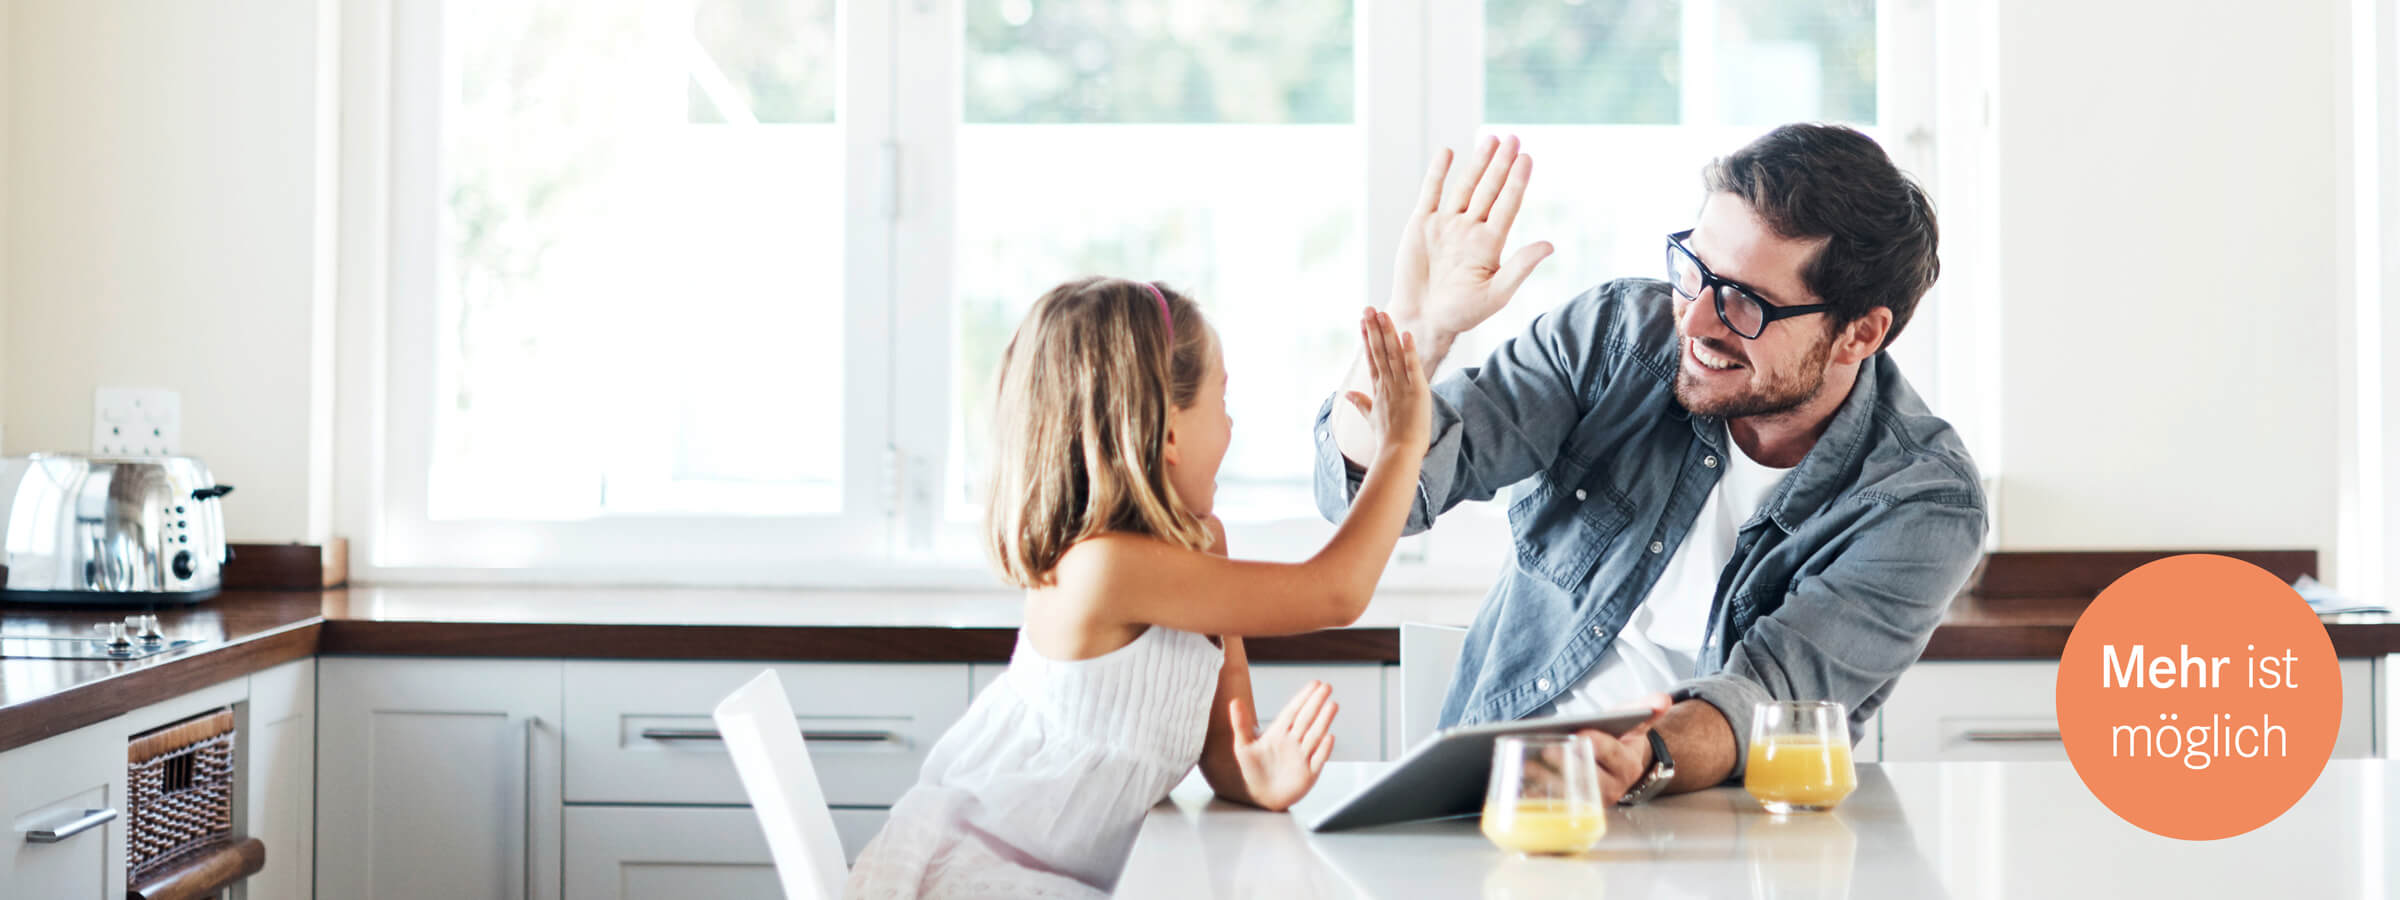 Vater und Tochter geben sich high-five